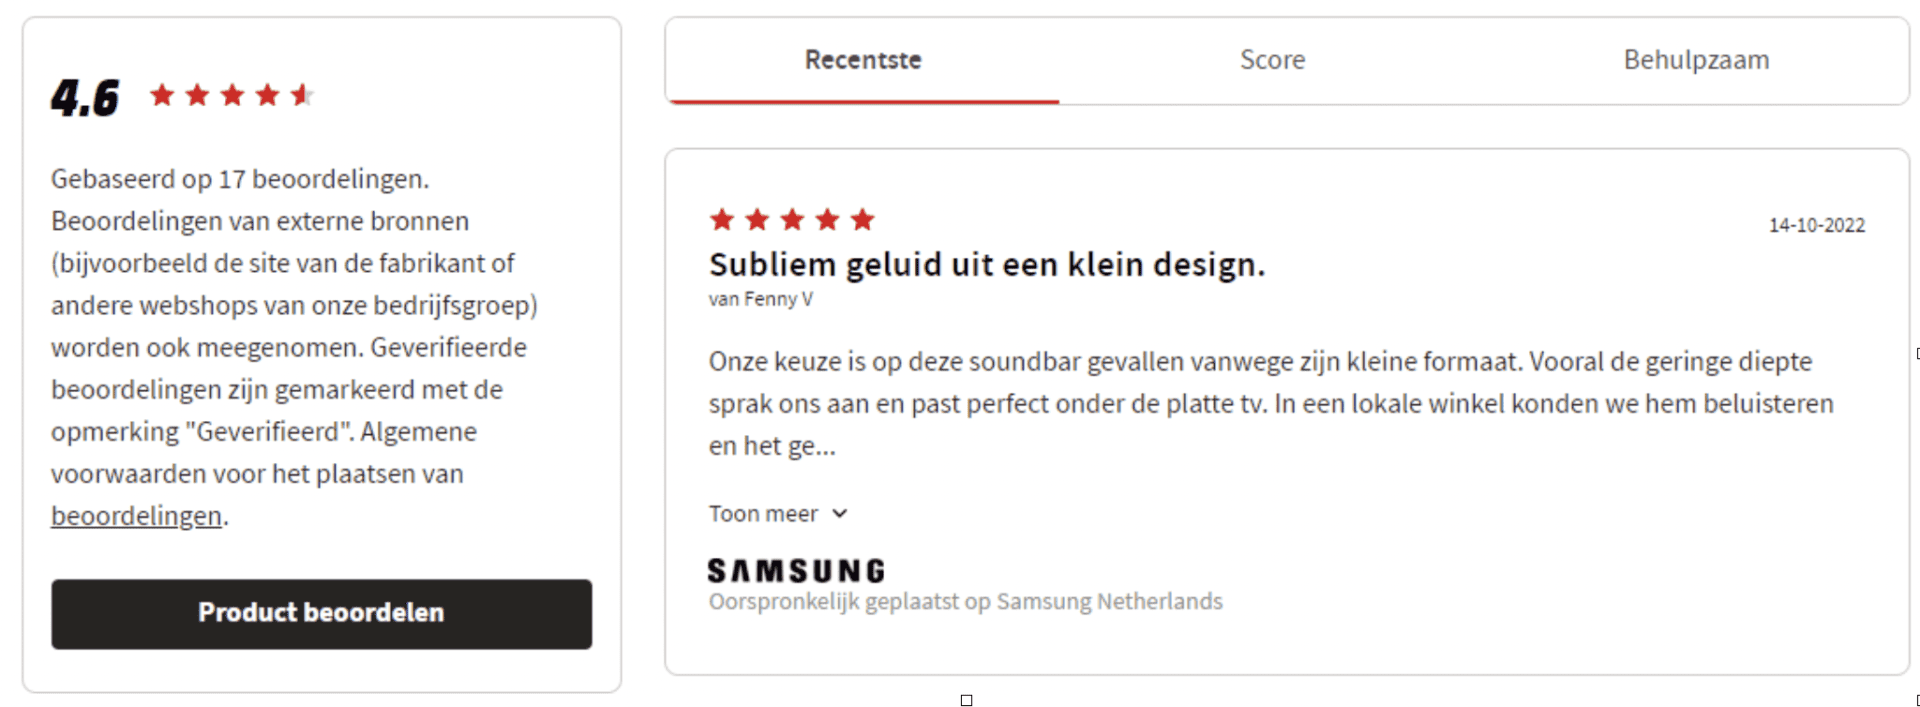 Een productreview van een Samsung soundbar